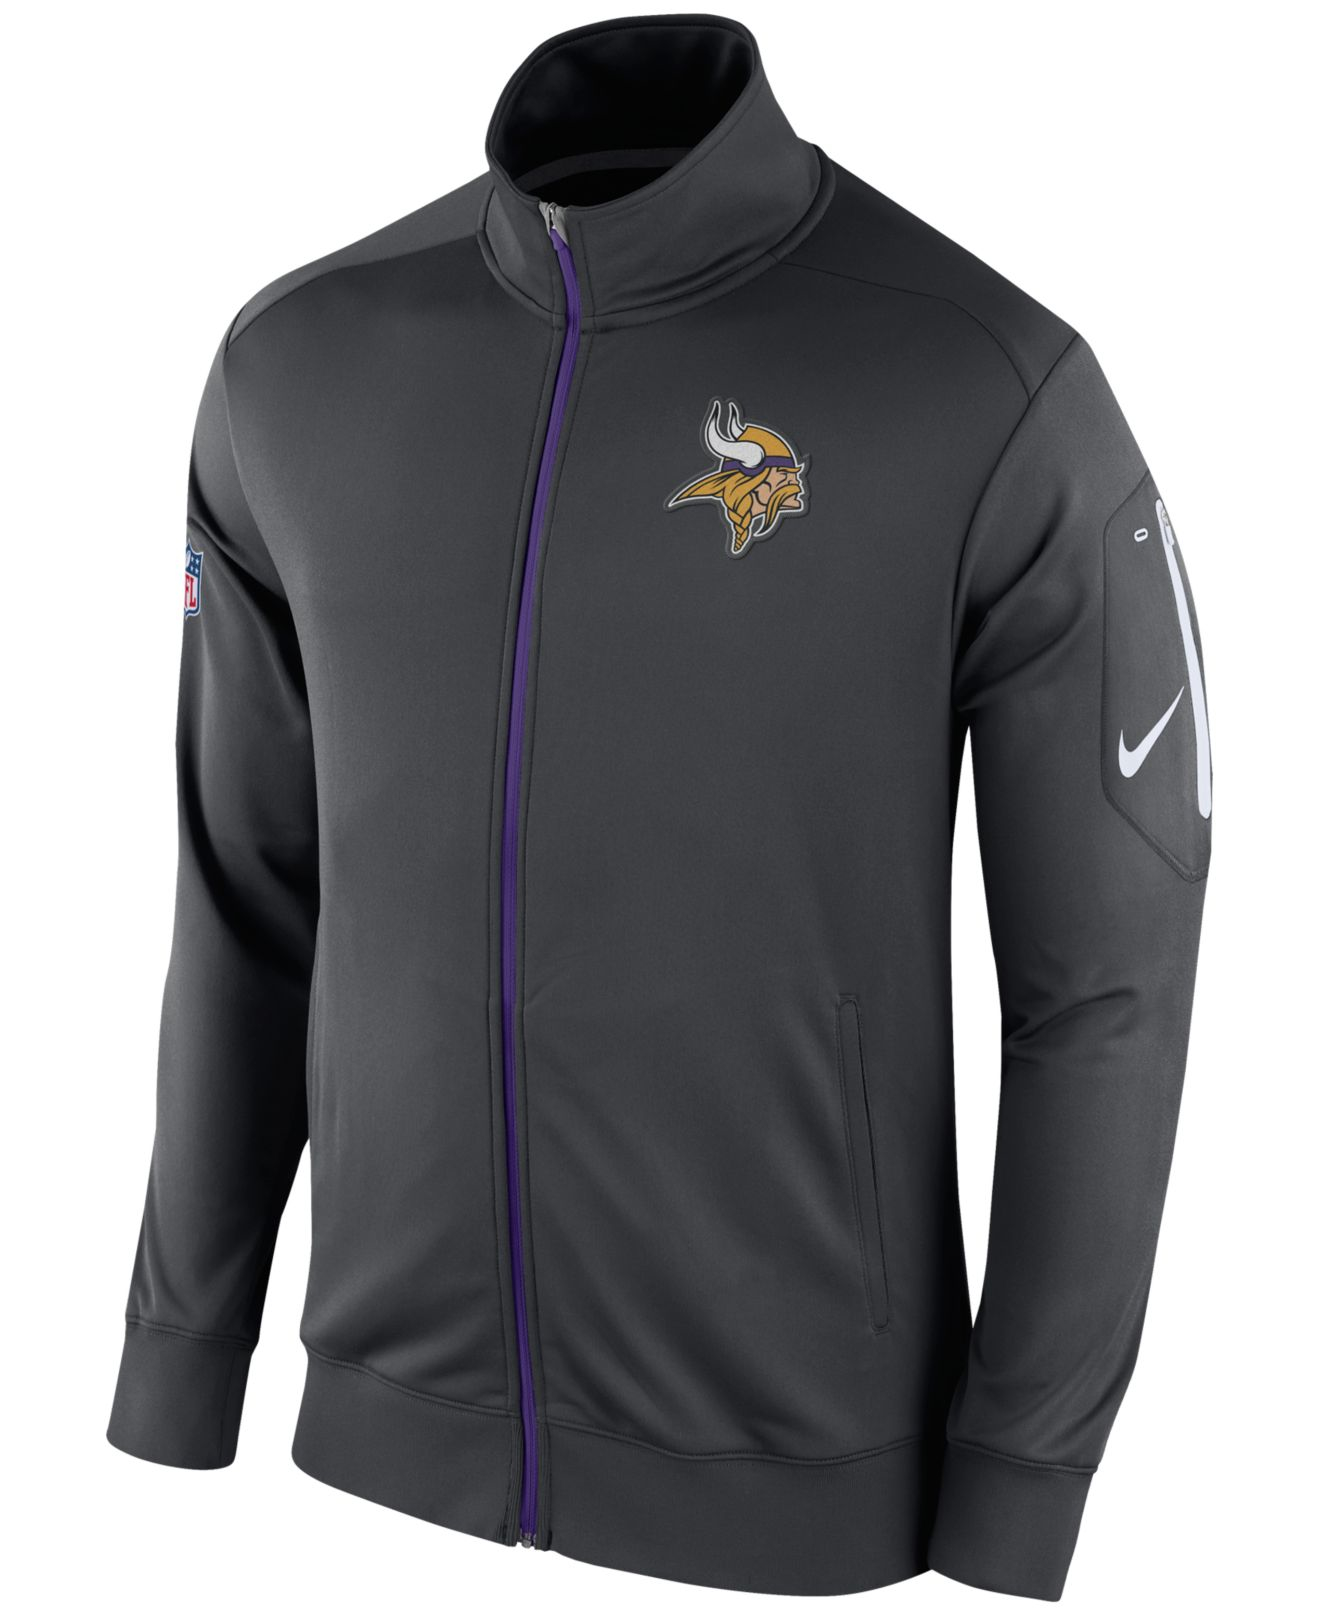 Lyst - Nike Men's Minnesota Vikings Empower Jacket in Gray for Men